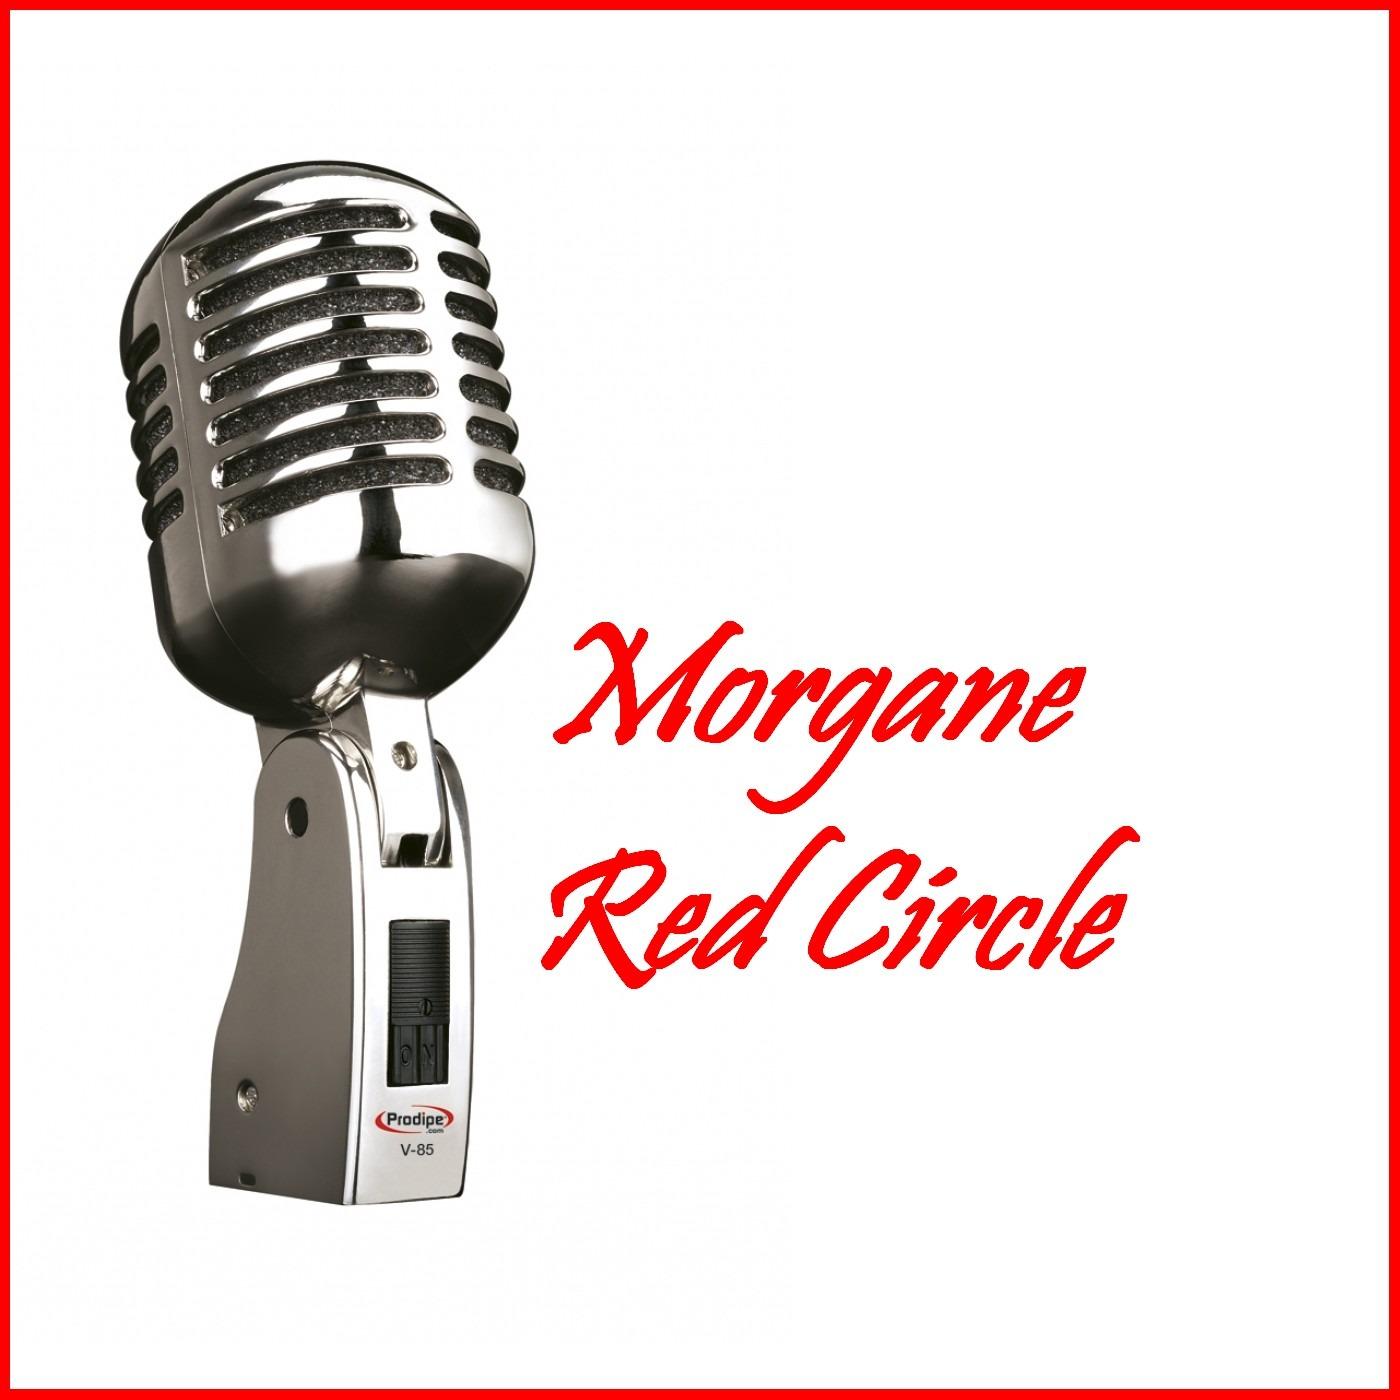 Morgane Red Circle